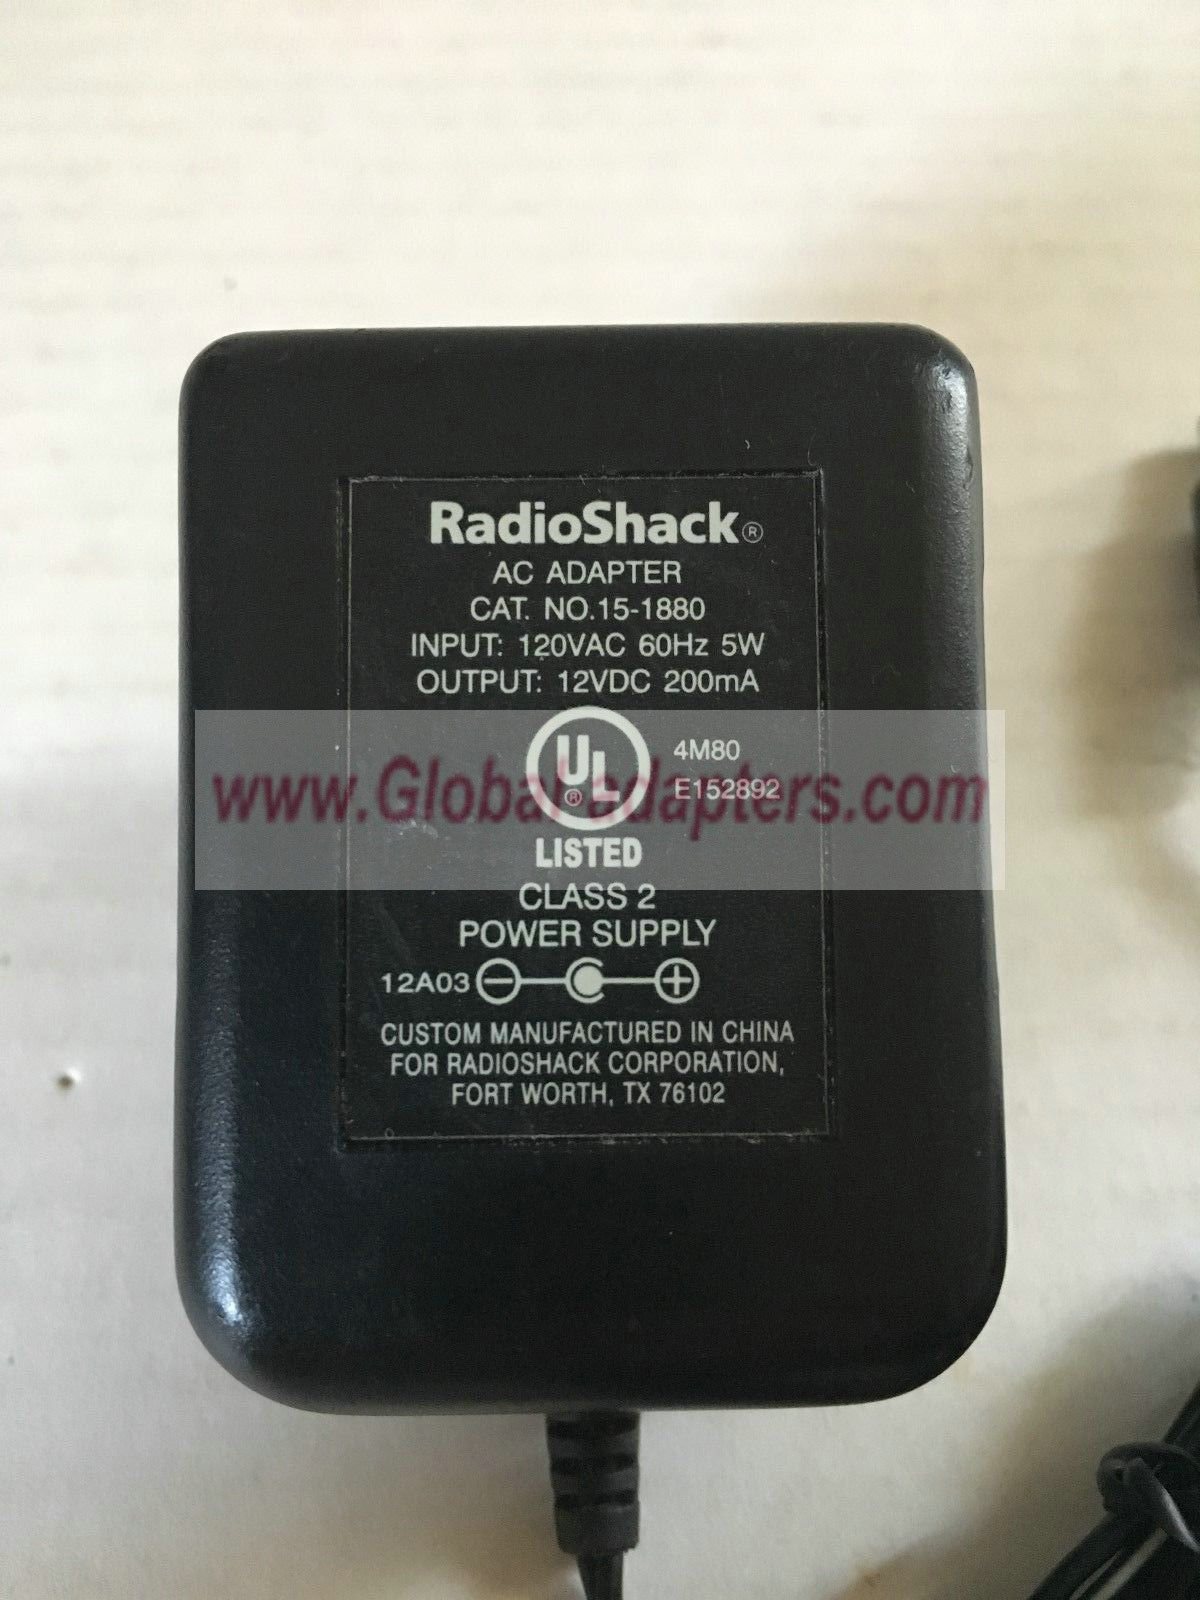 NEW 12V 200mA RadioShack 15-1880 AC Adapter